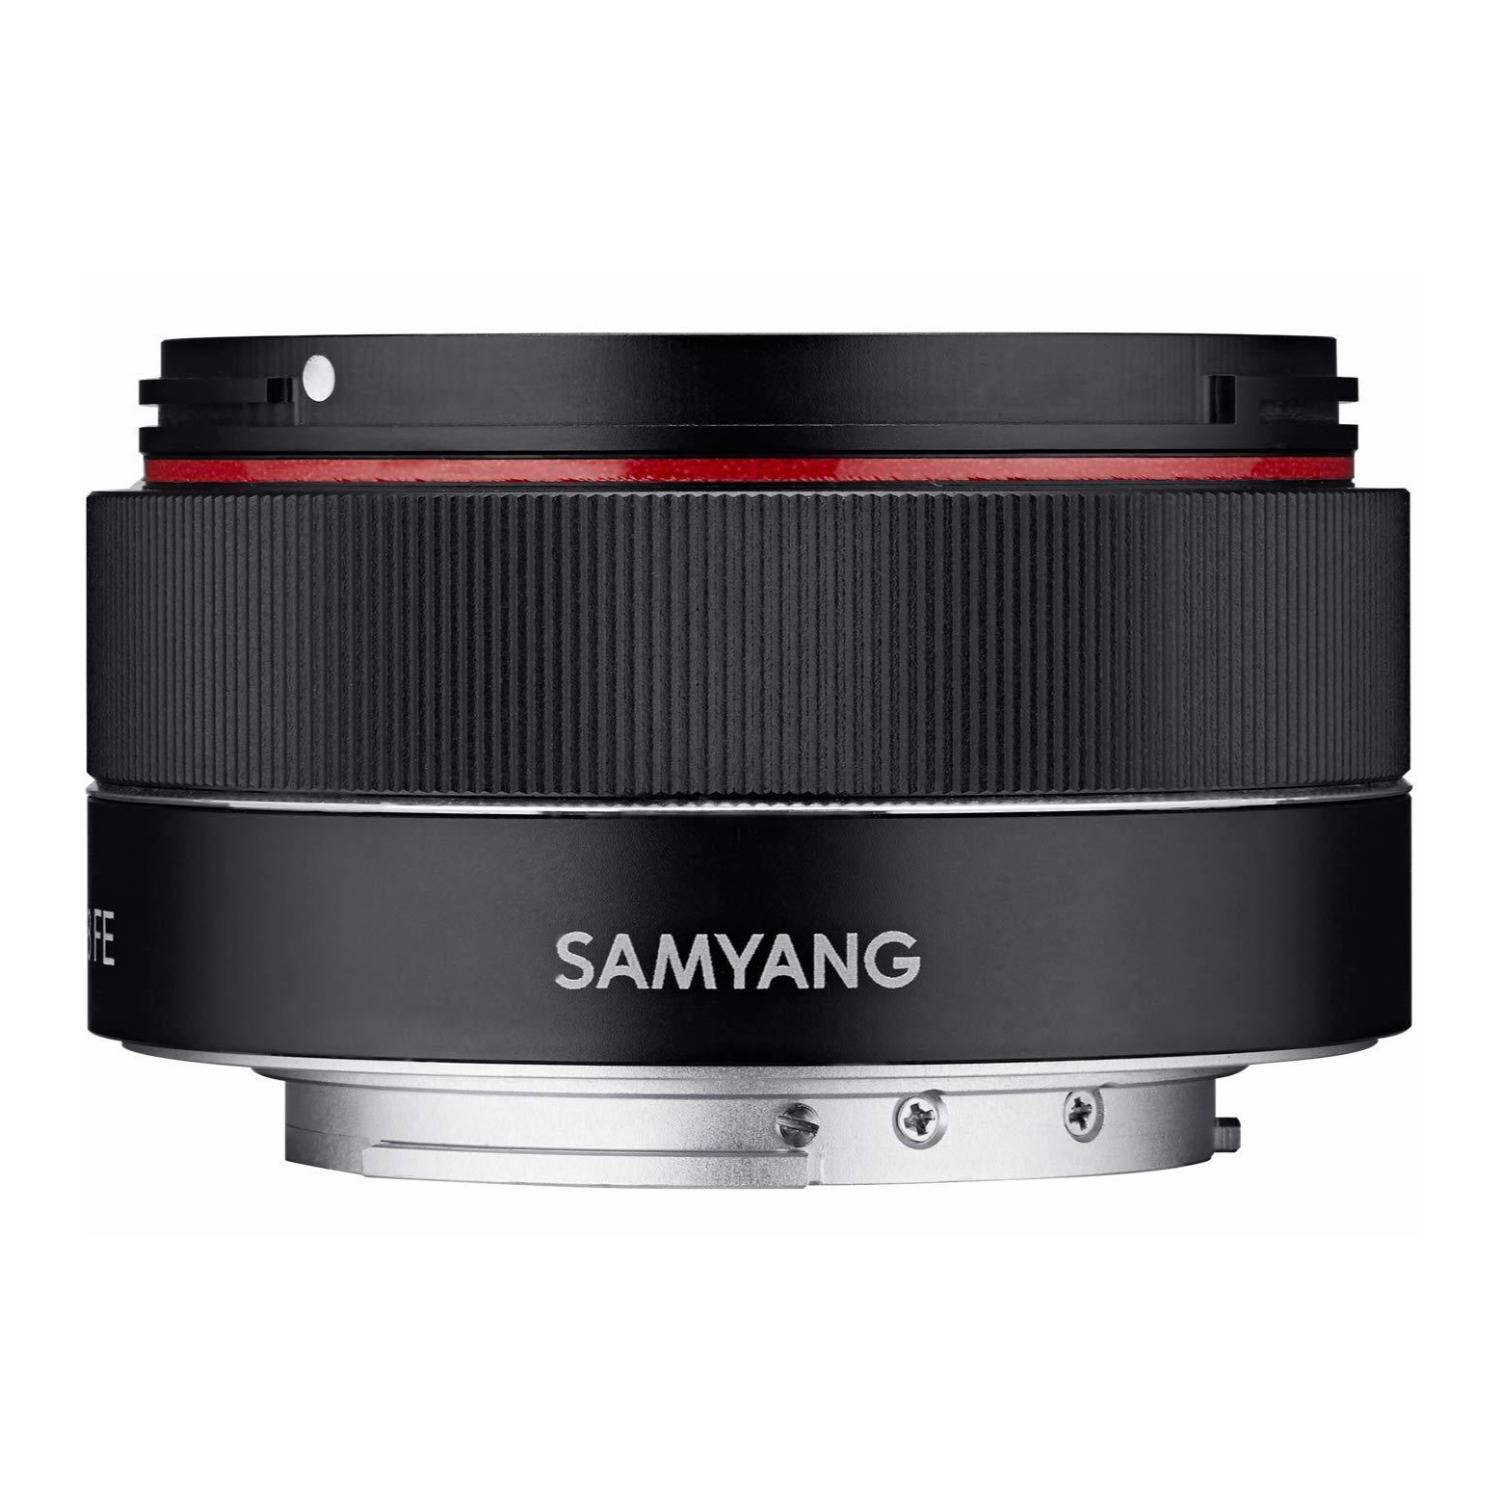 Samyang AF 35mm f/2.8 FE Lens for E-Mount